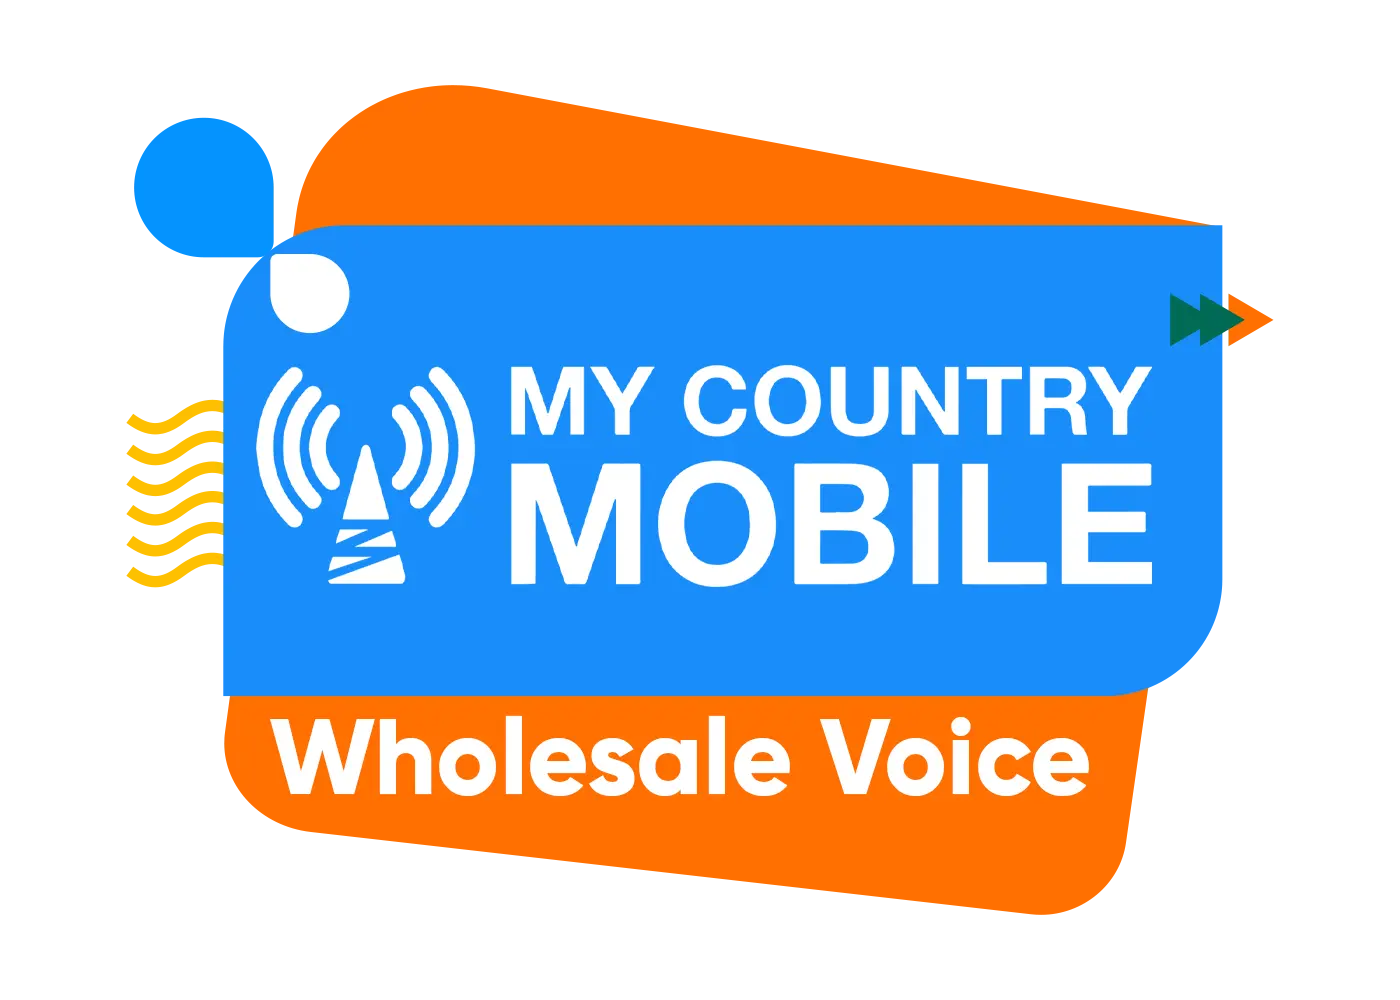 Wholesale voice